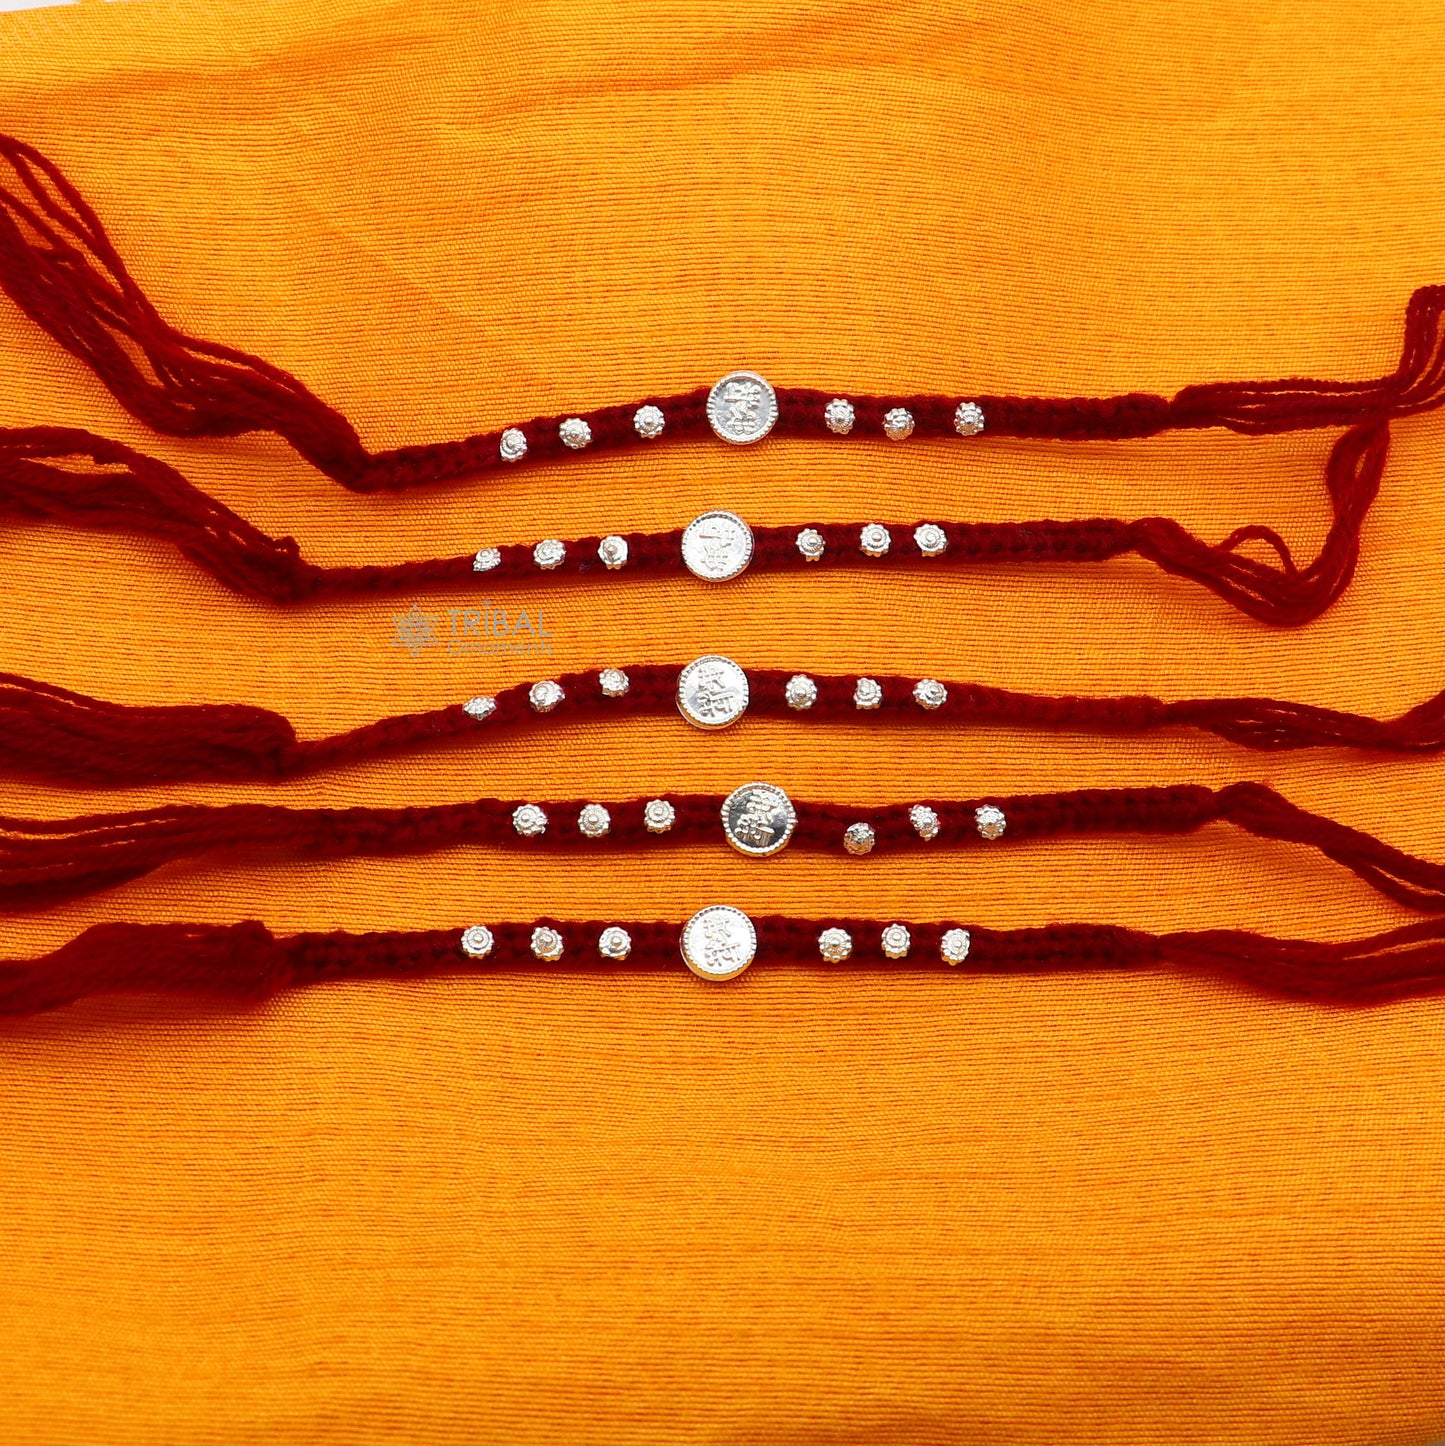 Classic red color threads Silver customized design Rakhi bracelet Best sibling rakhi for Festival Rakshabandhan rk298 - TRIBAL ORNAMENTS